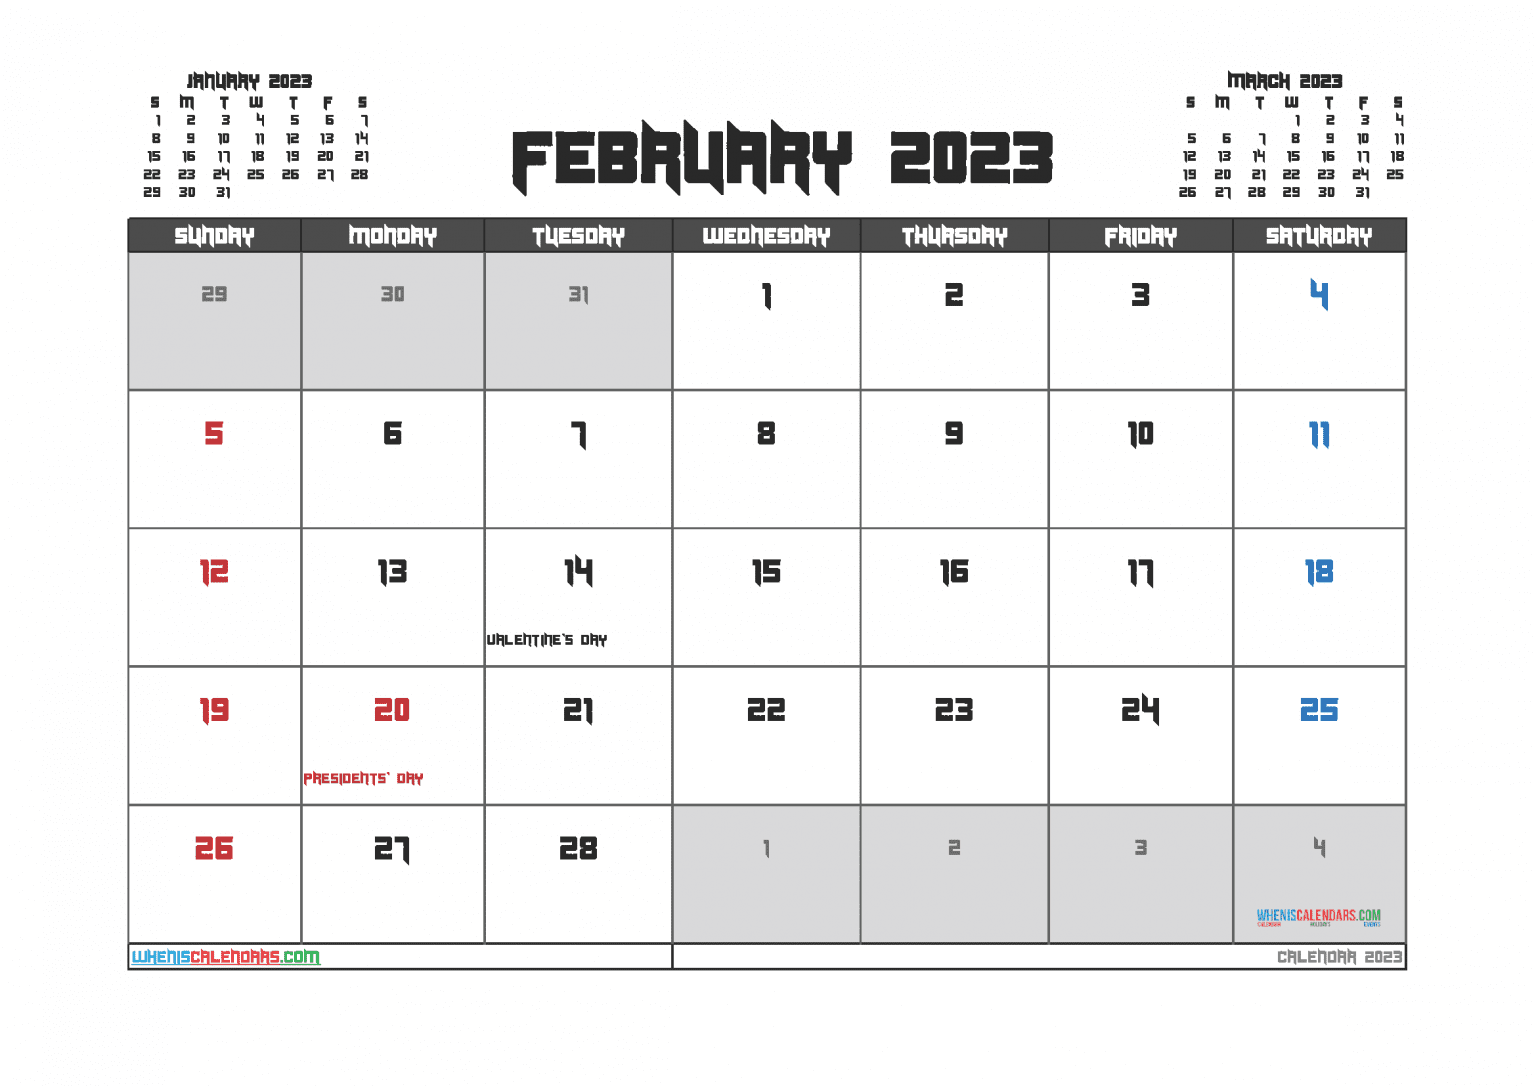 Free Printable February 2023 Calendar Cute Design In Landscape